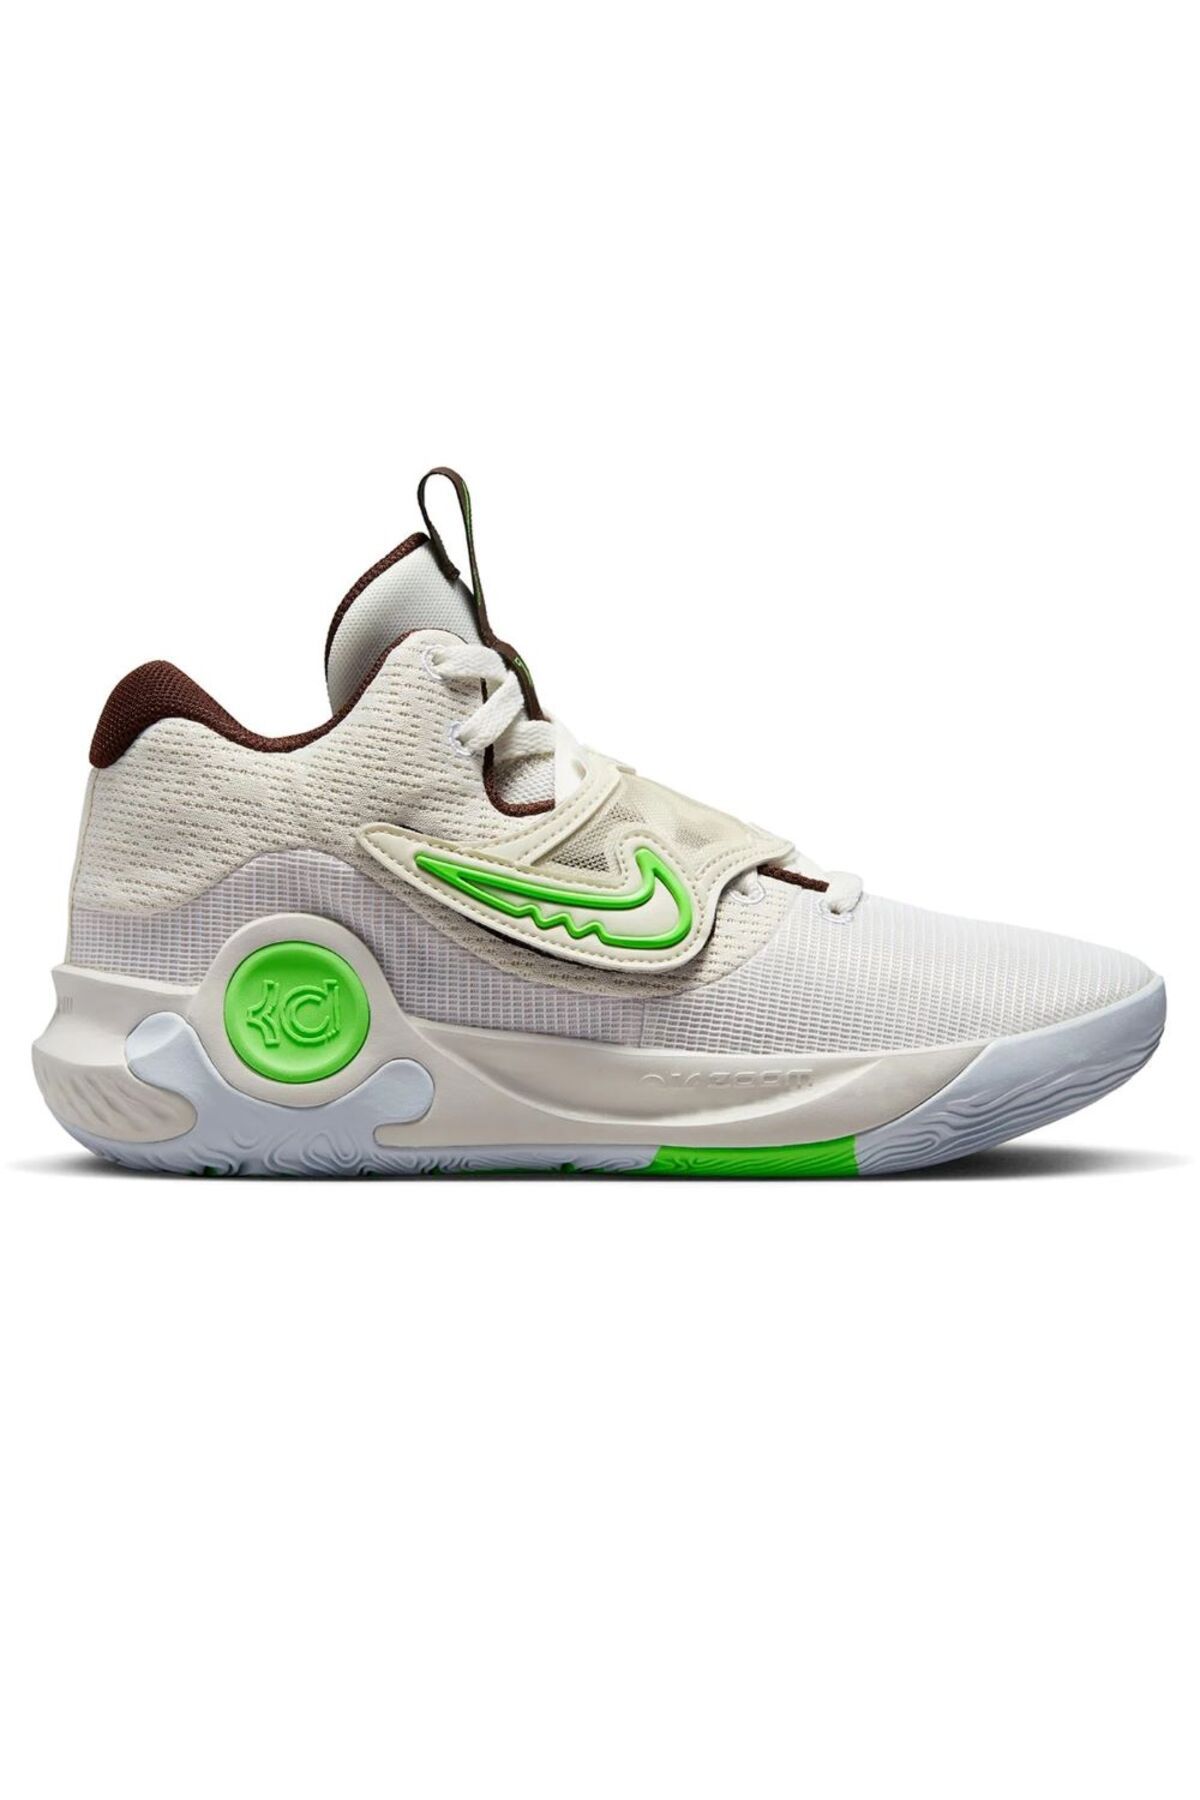 Nike Kevin Durant Kd Trey 5 X Erkek Yeşil Basketbol Ayakkabısı